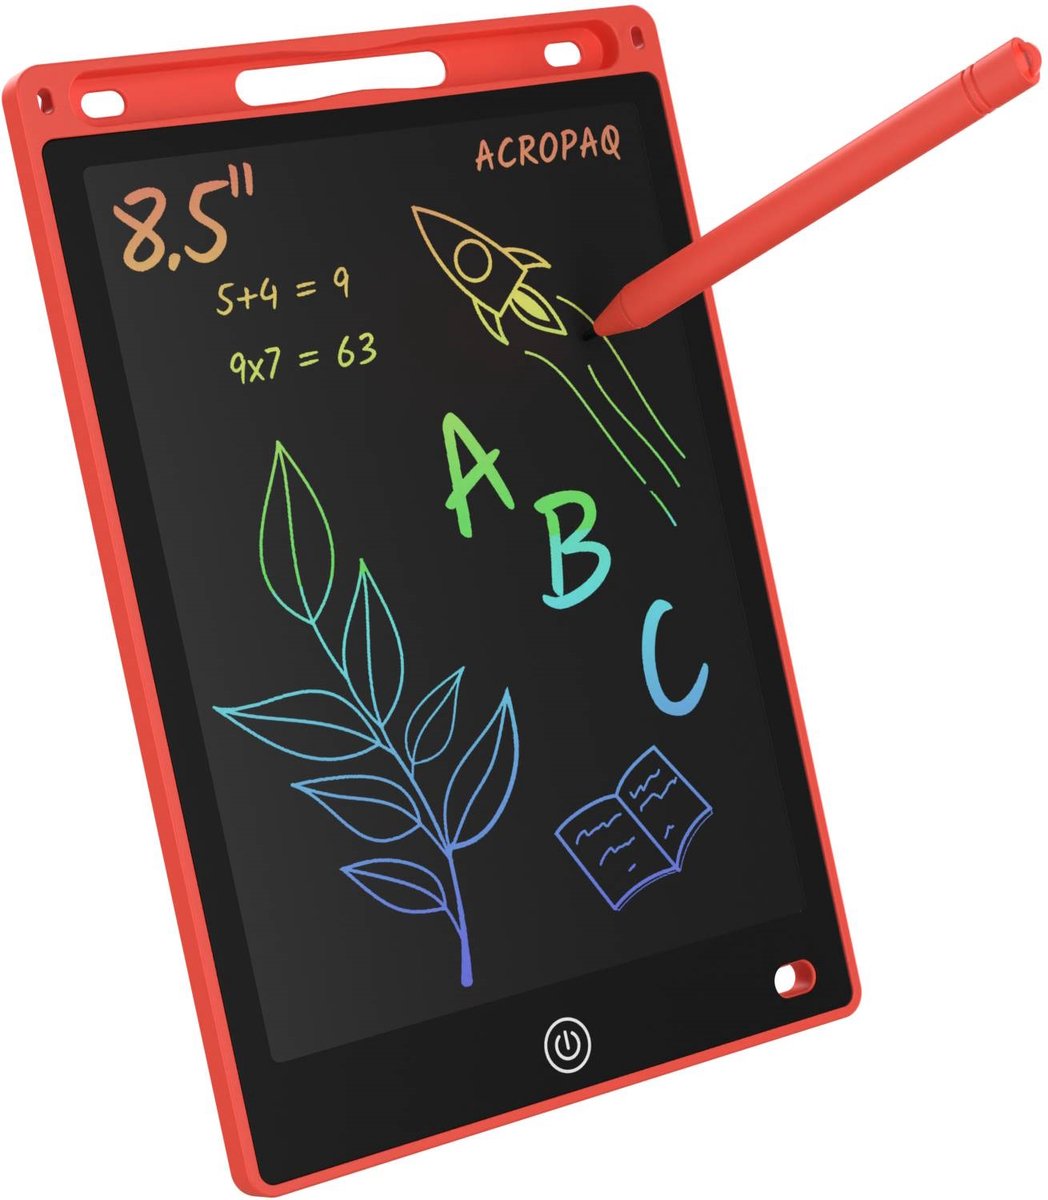 Tekentablet kinderen - 8,5 inch, Rood met kleurenscherm - Drawing tablet, Grafische tablet, LCD tekentablet - ACROPAQ